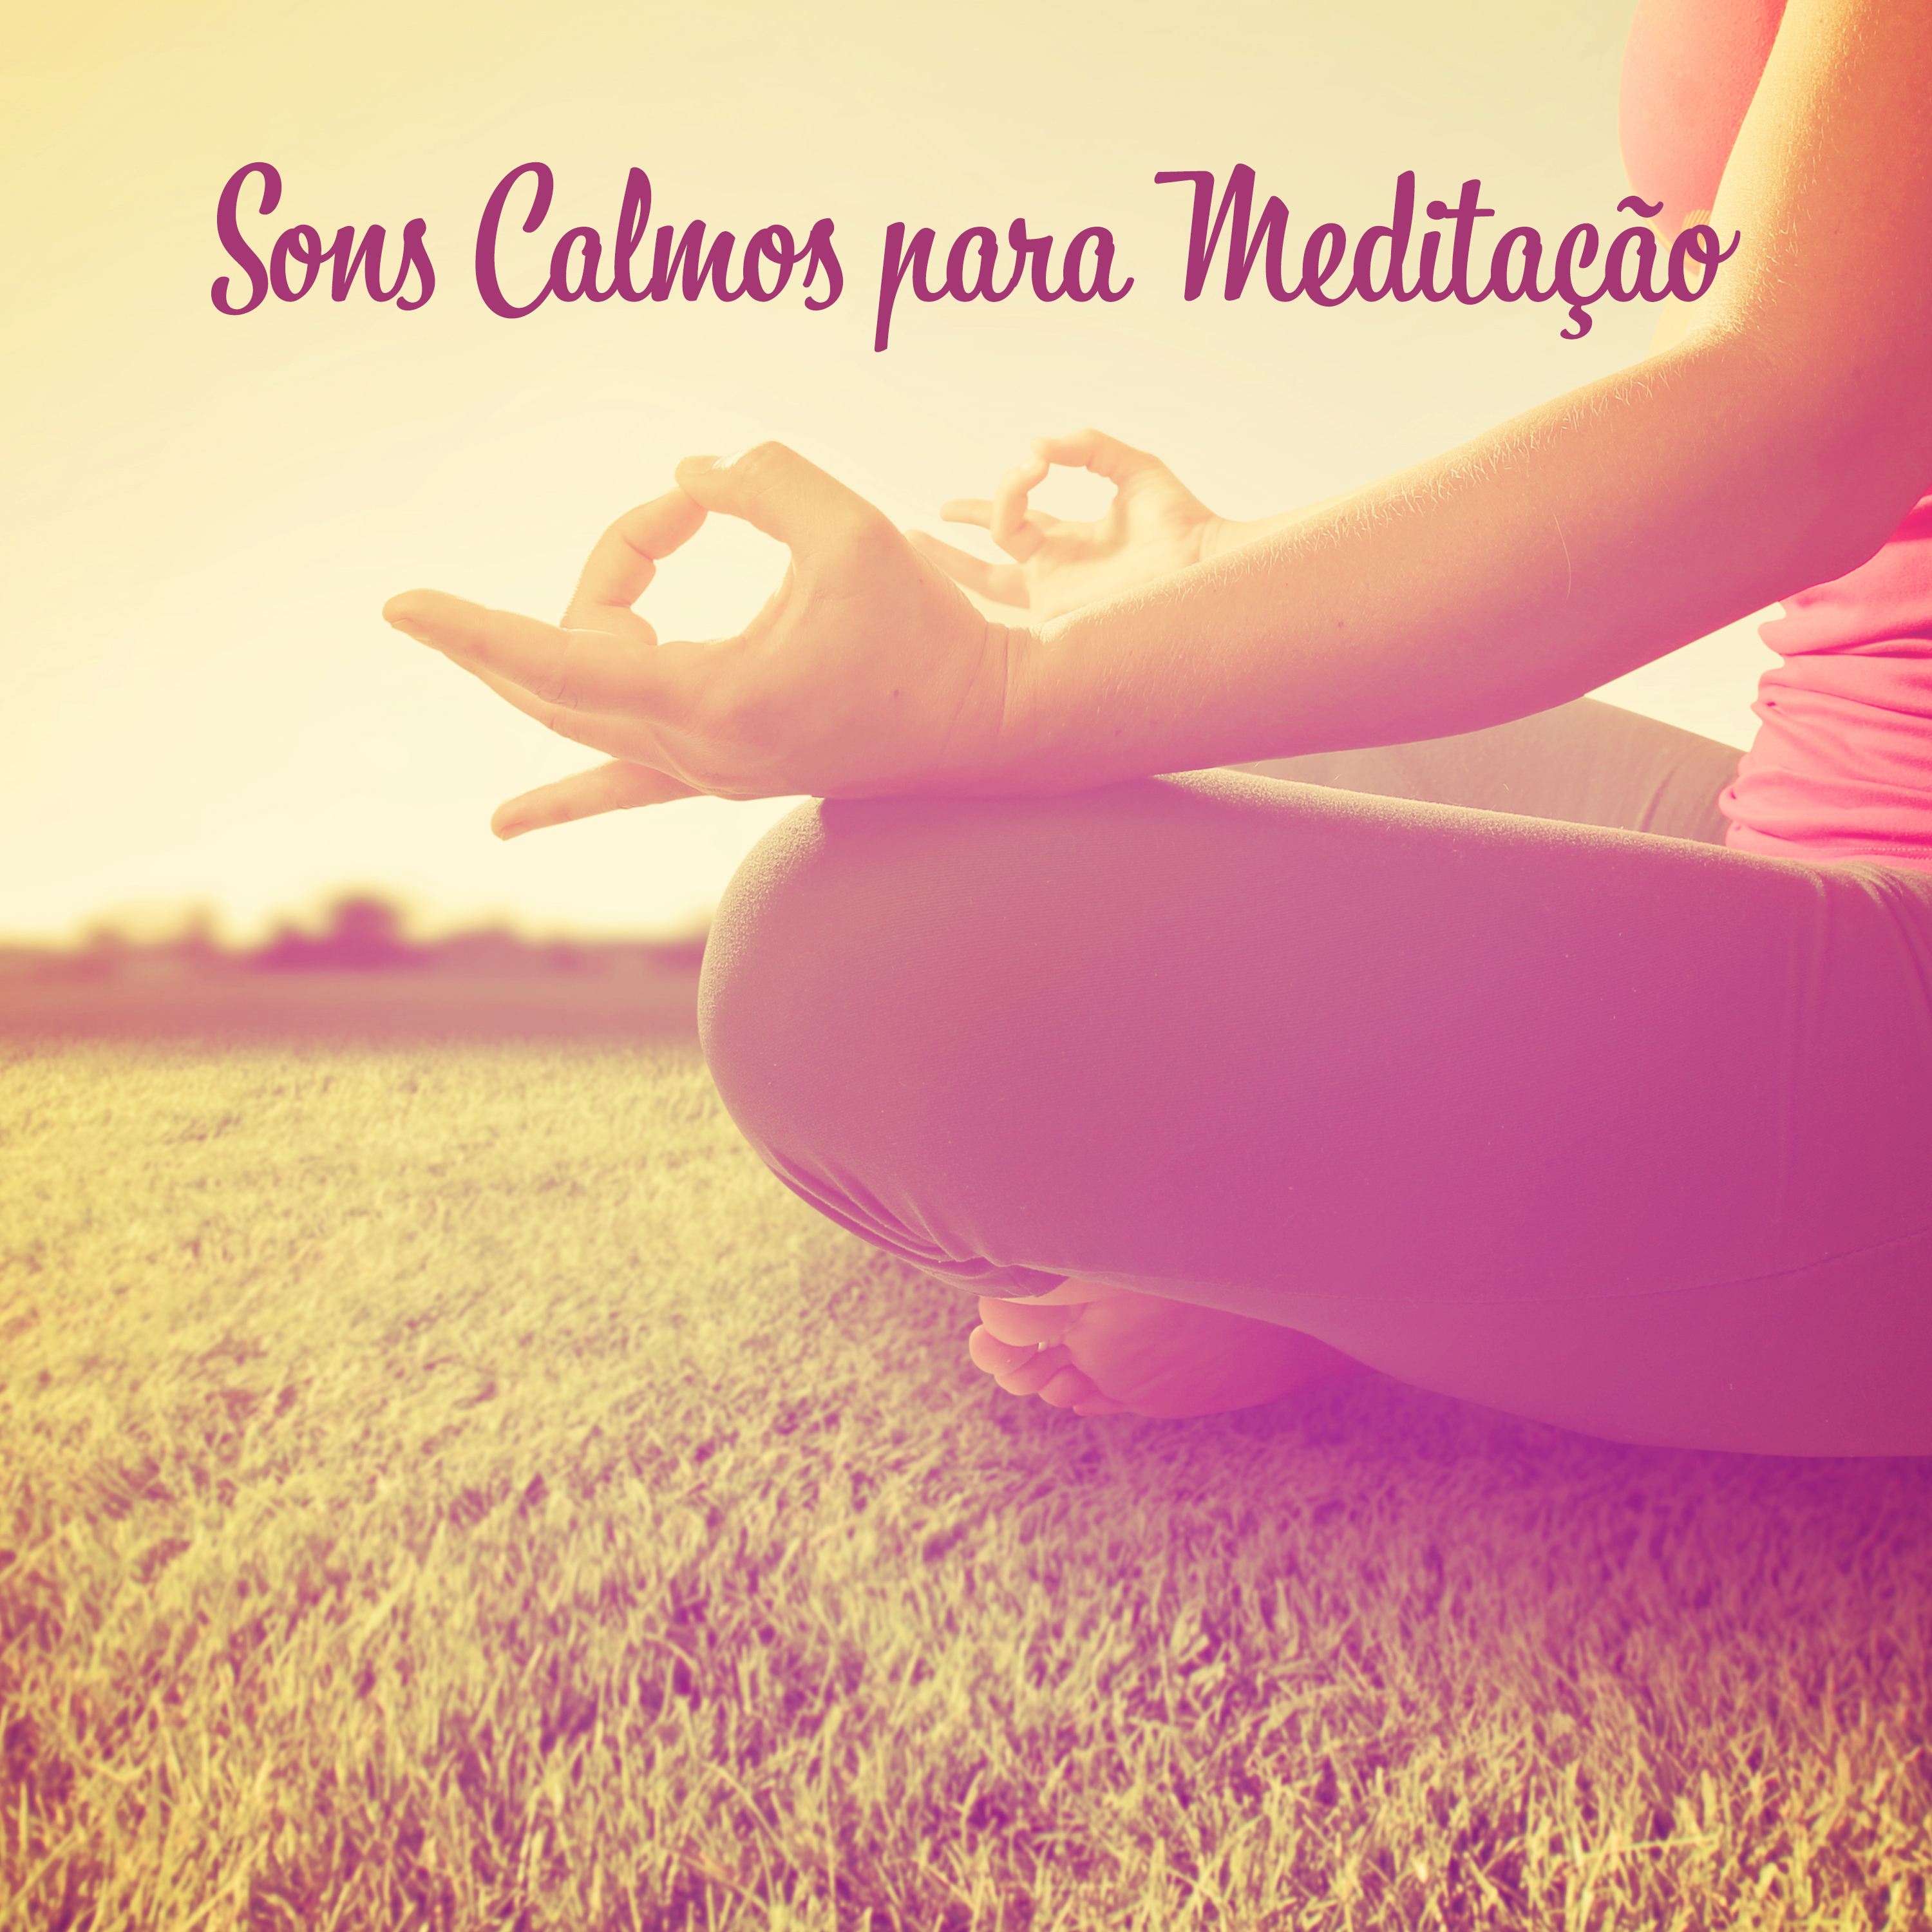 Sons Calmos para Meditação (Sons da Natureza para Relaxamento, Treinamento de Ioga, Chuva Relaxante)